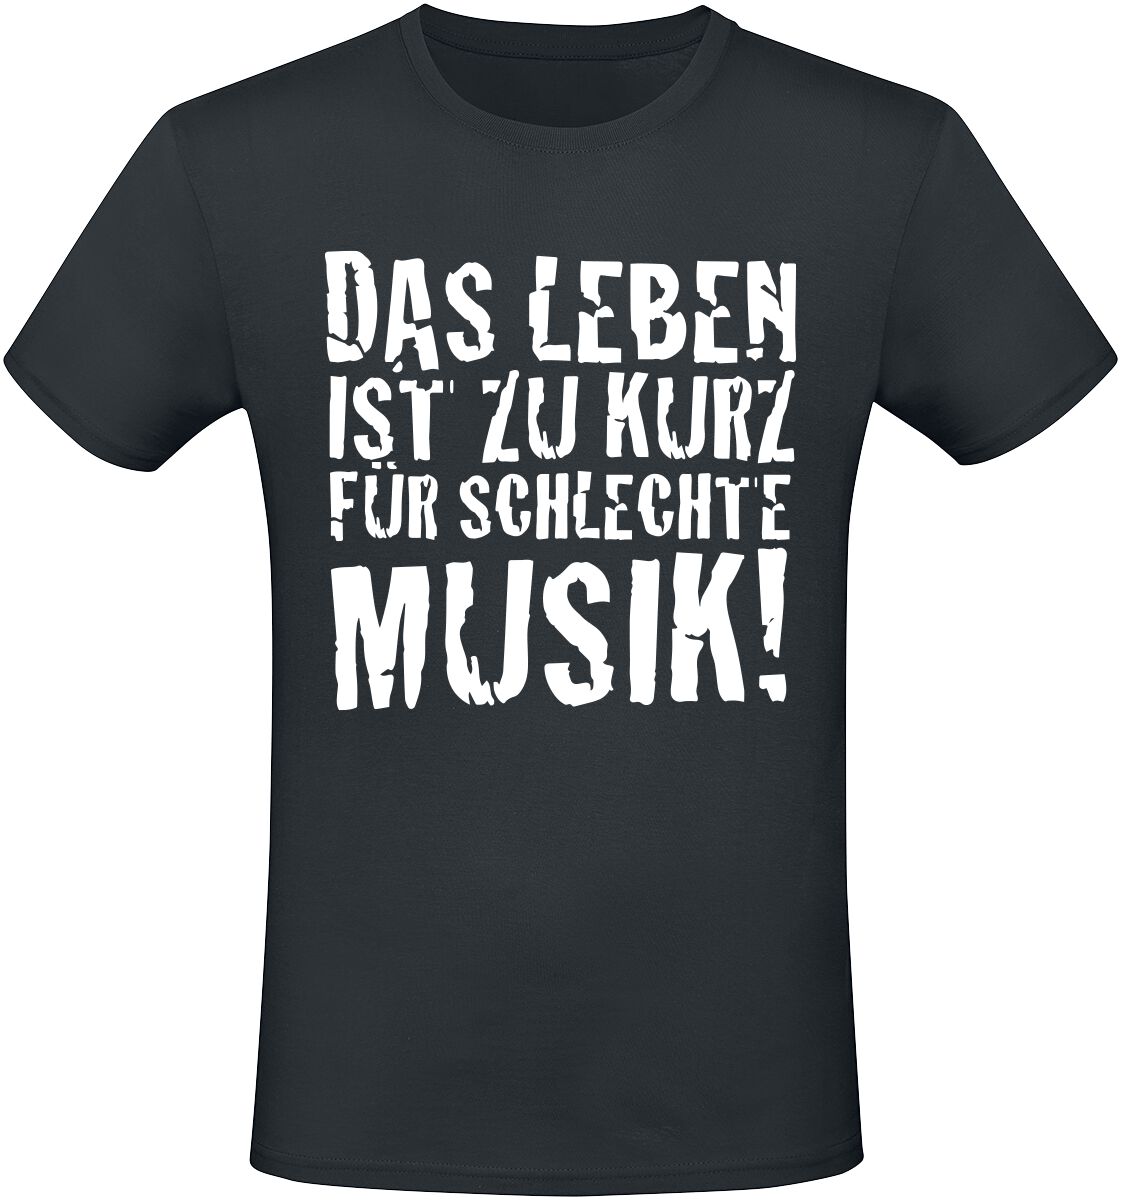 Sprüche Das Leben ist zu kurz für schlechte Musik! T-Shirt schwarz in L